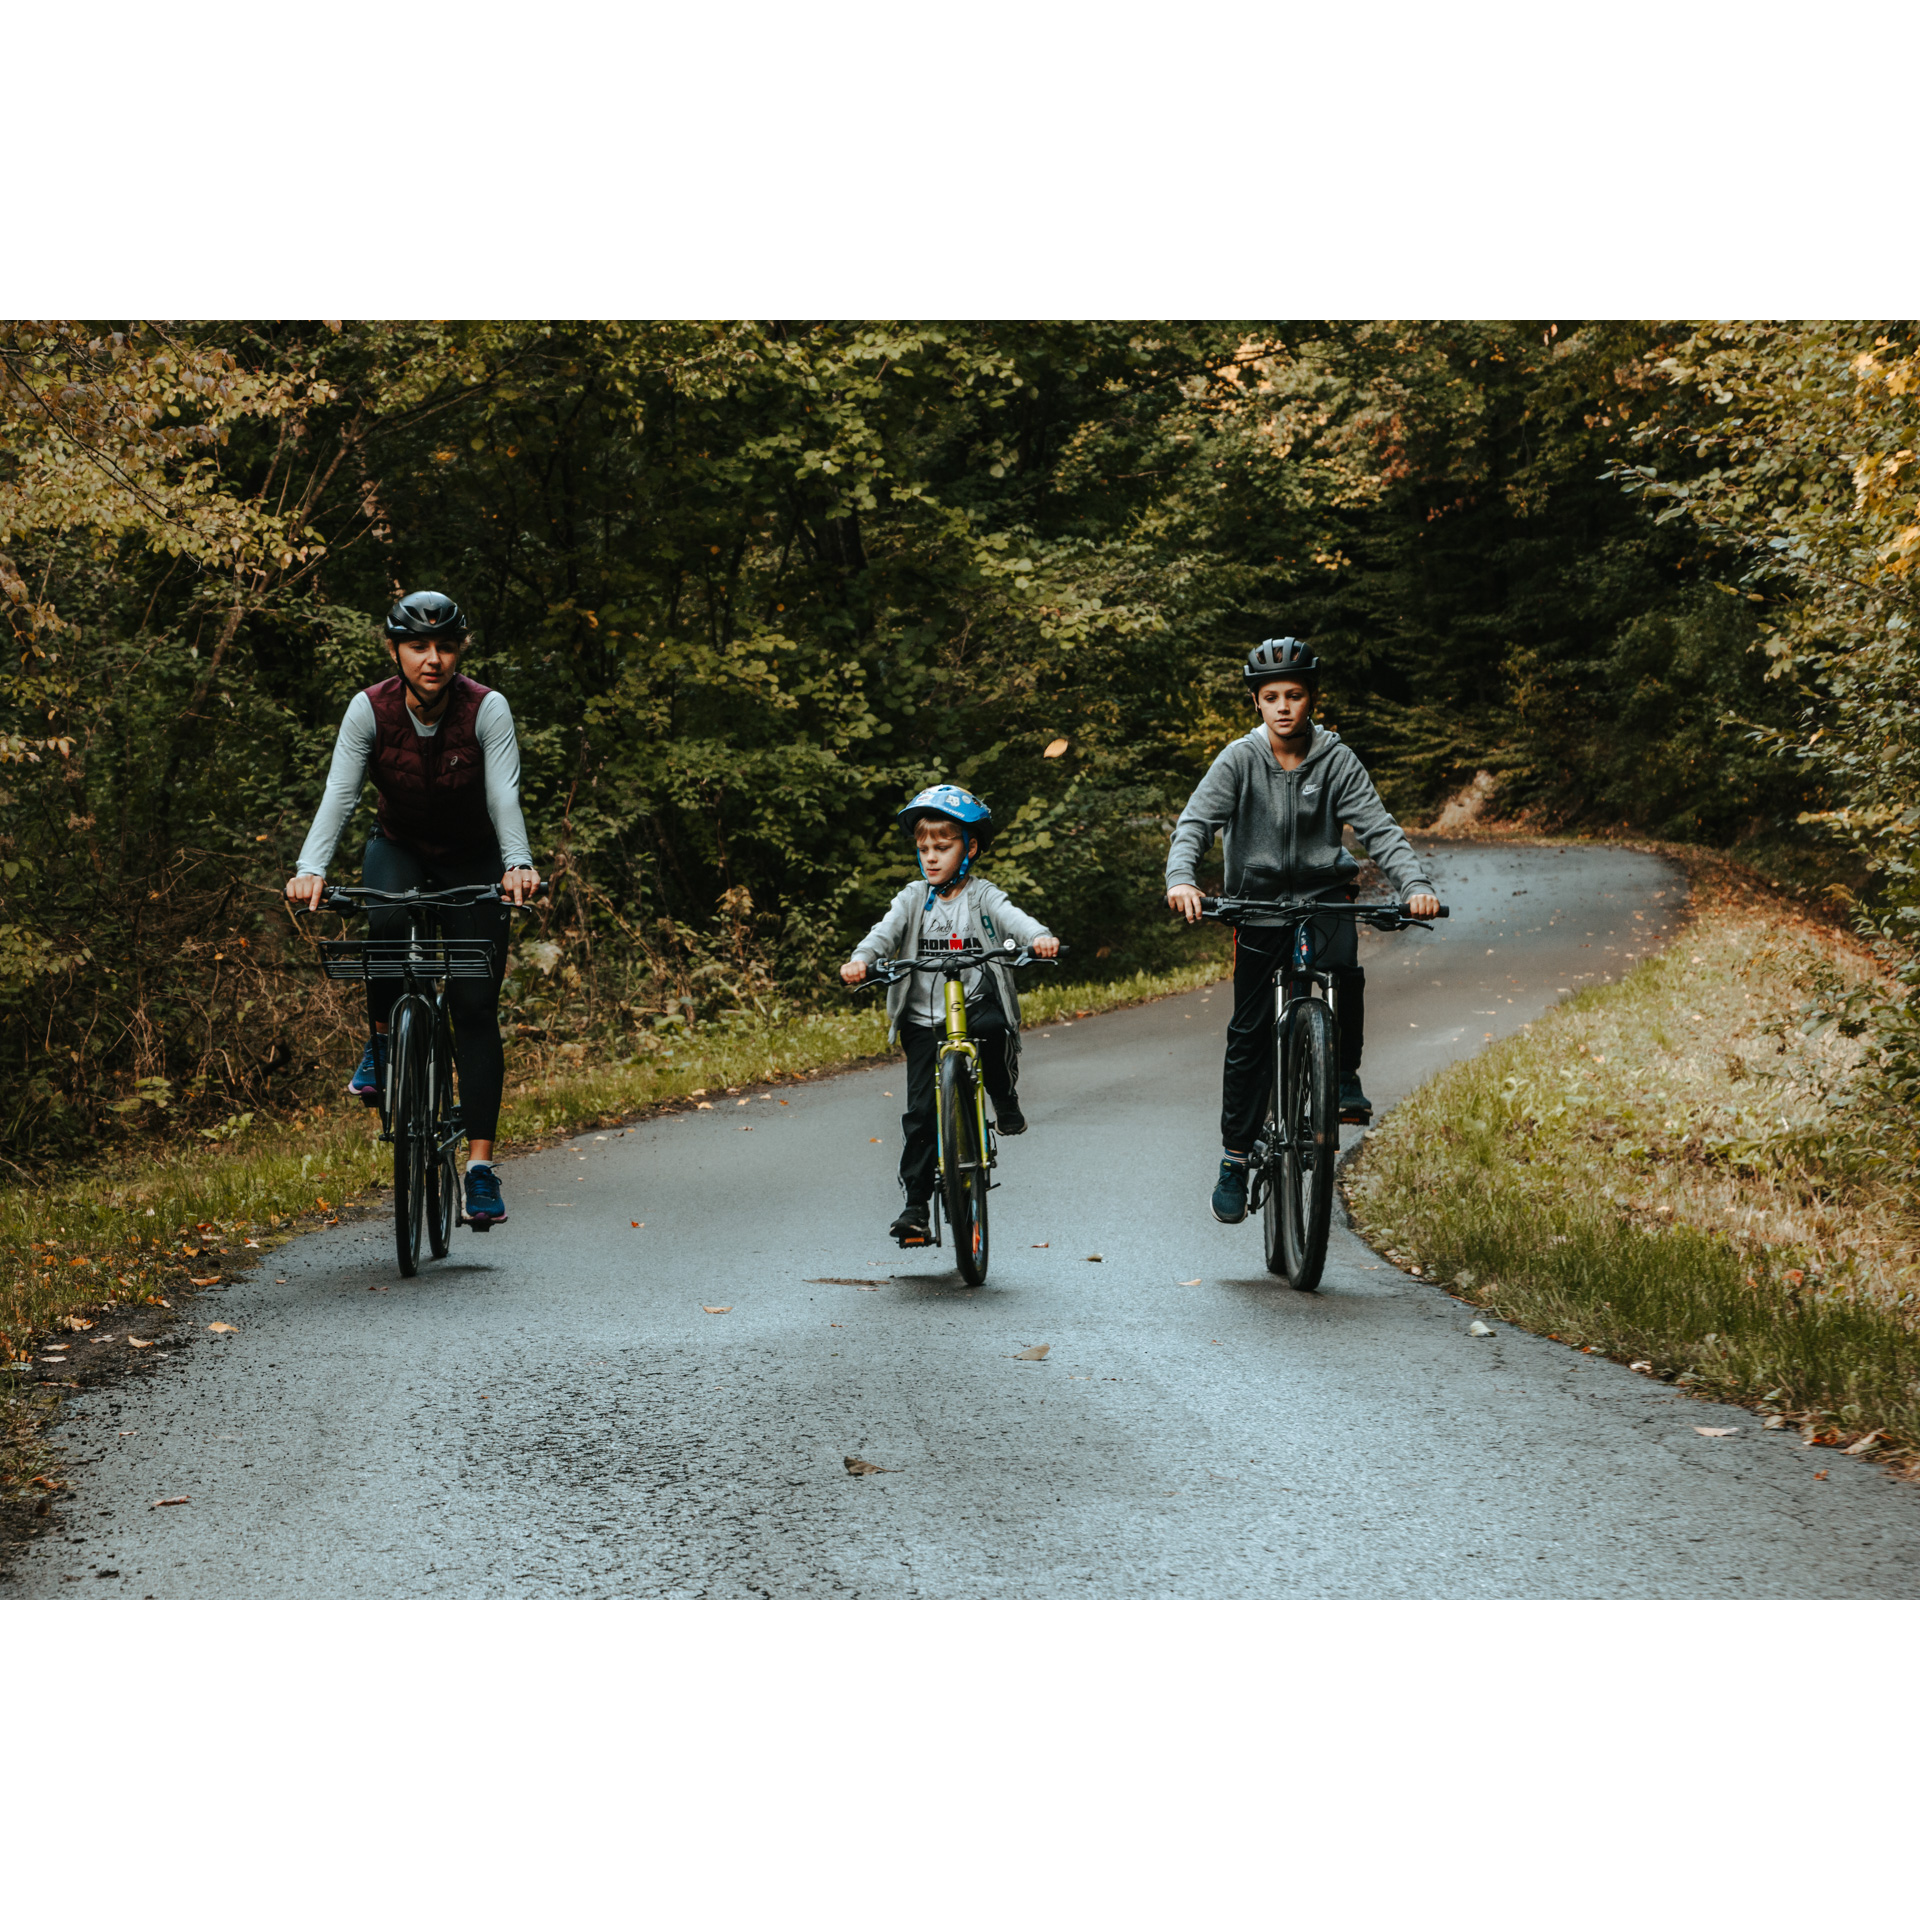 Kobieta i dwójka chłopców w kaskach jadący na rowerach asfaltową drogą wśród zielonych drzew